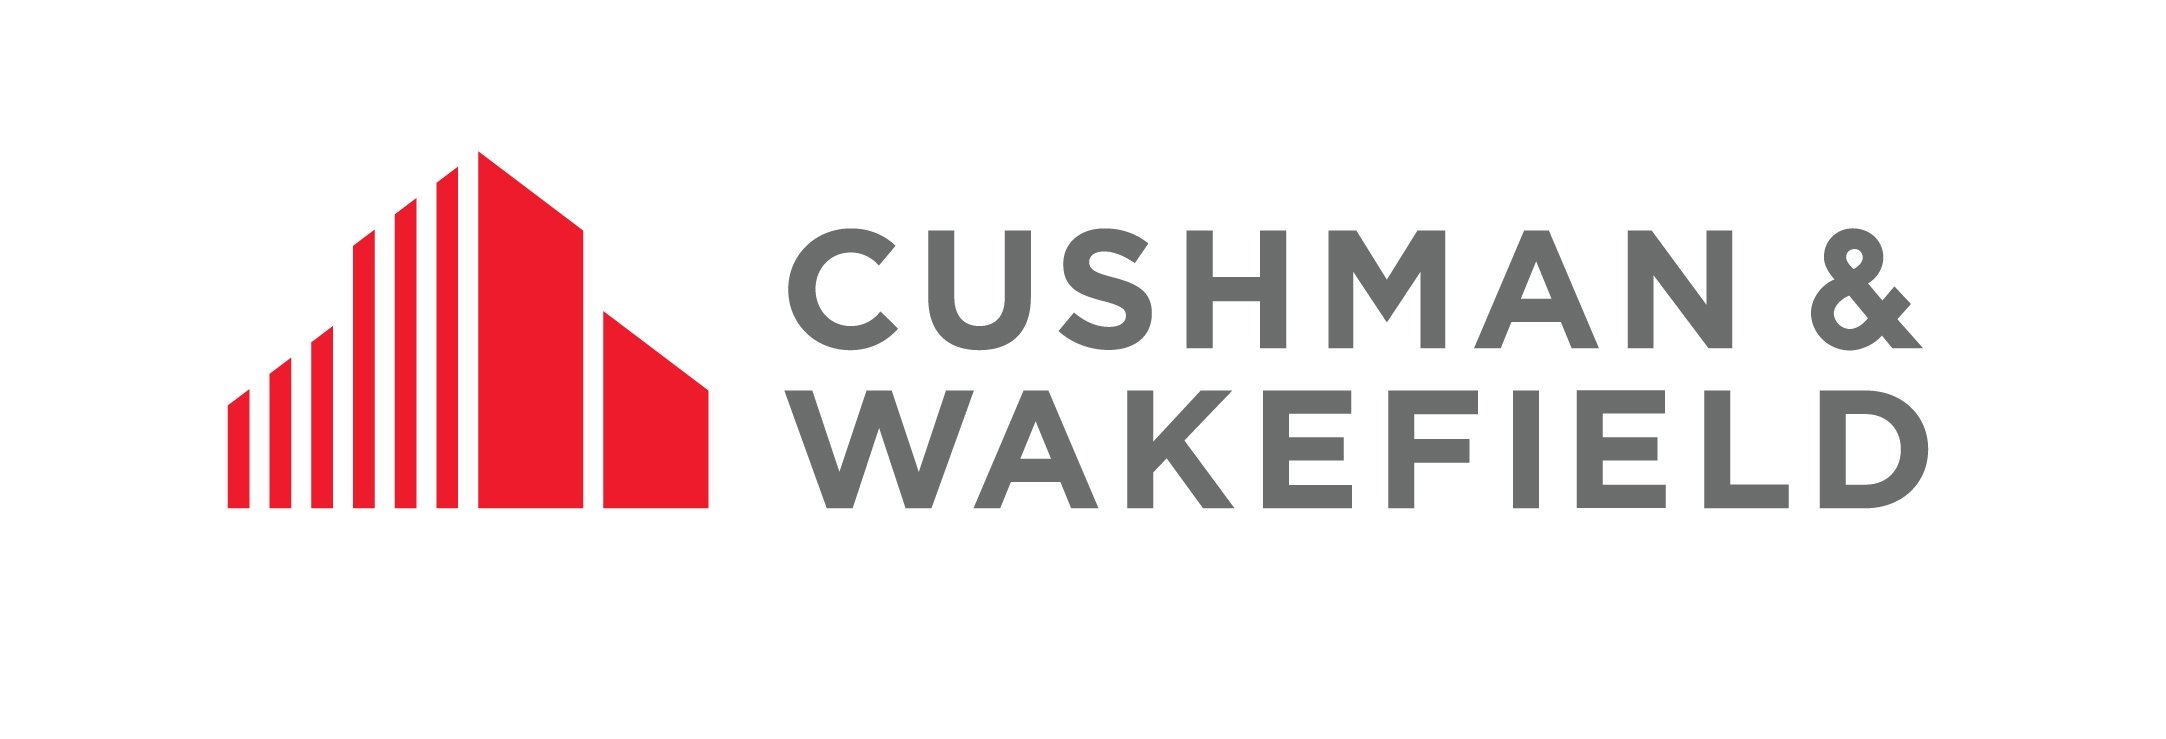 Cushman Wake